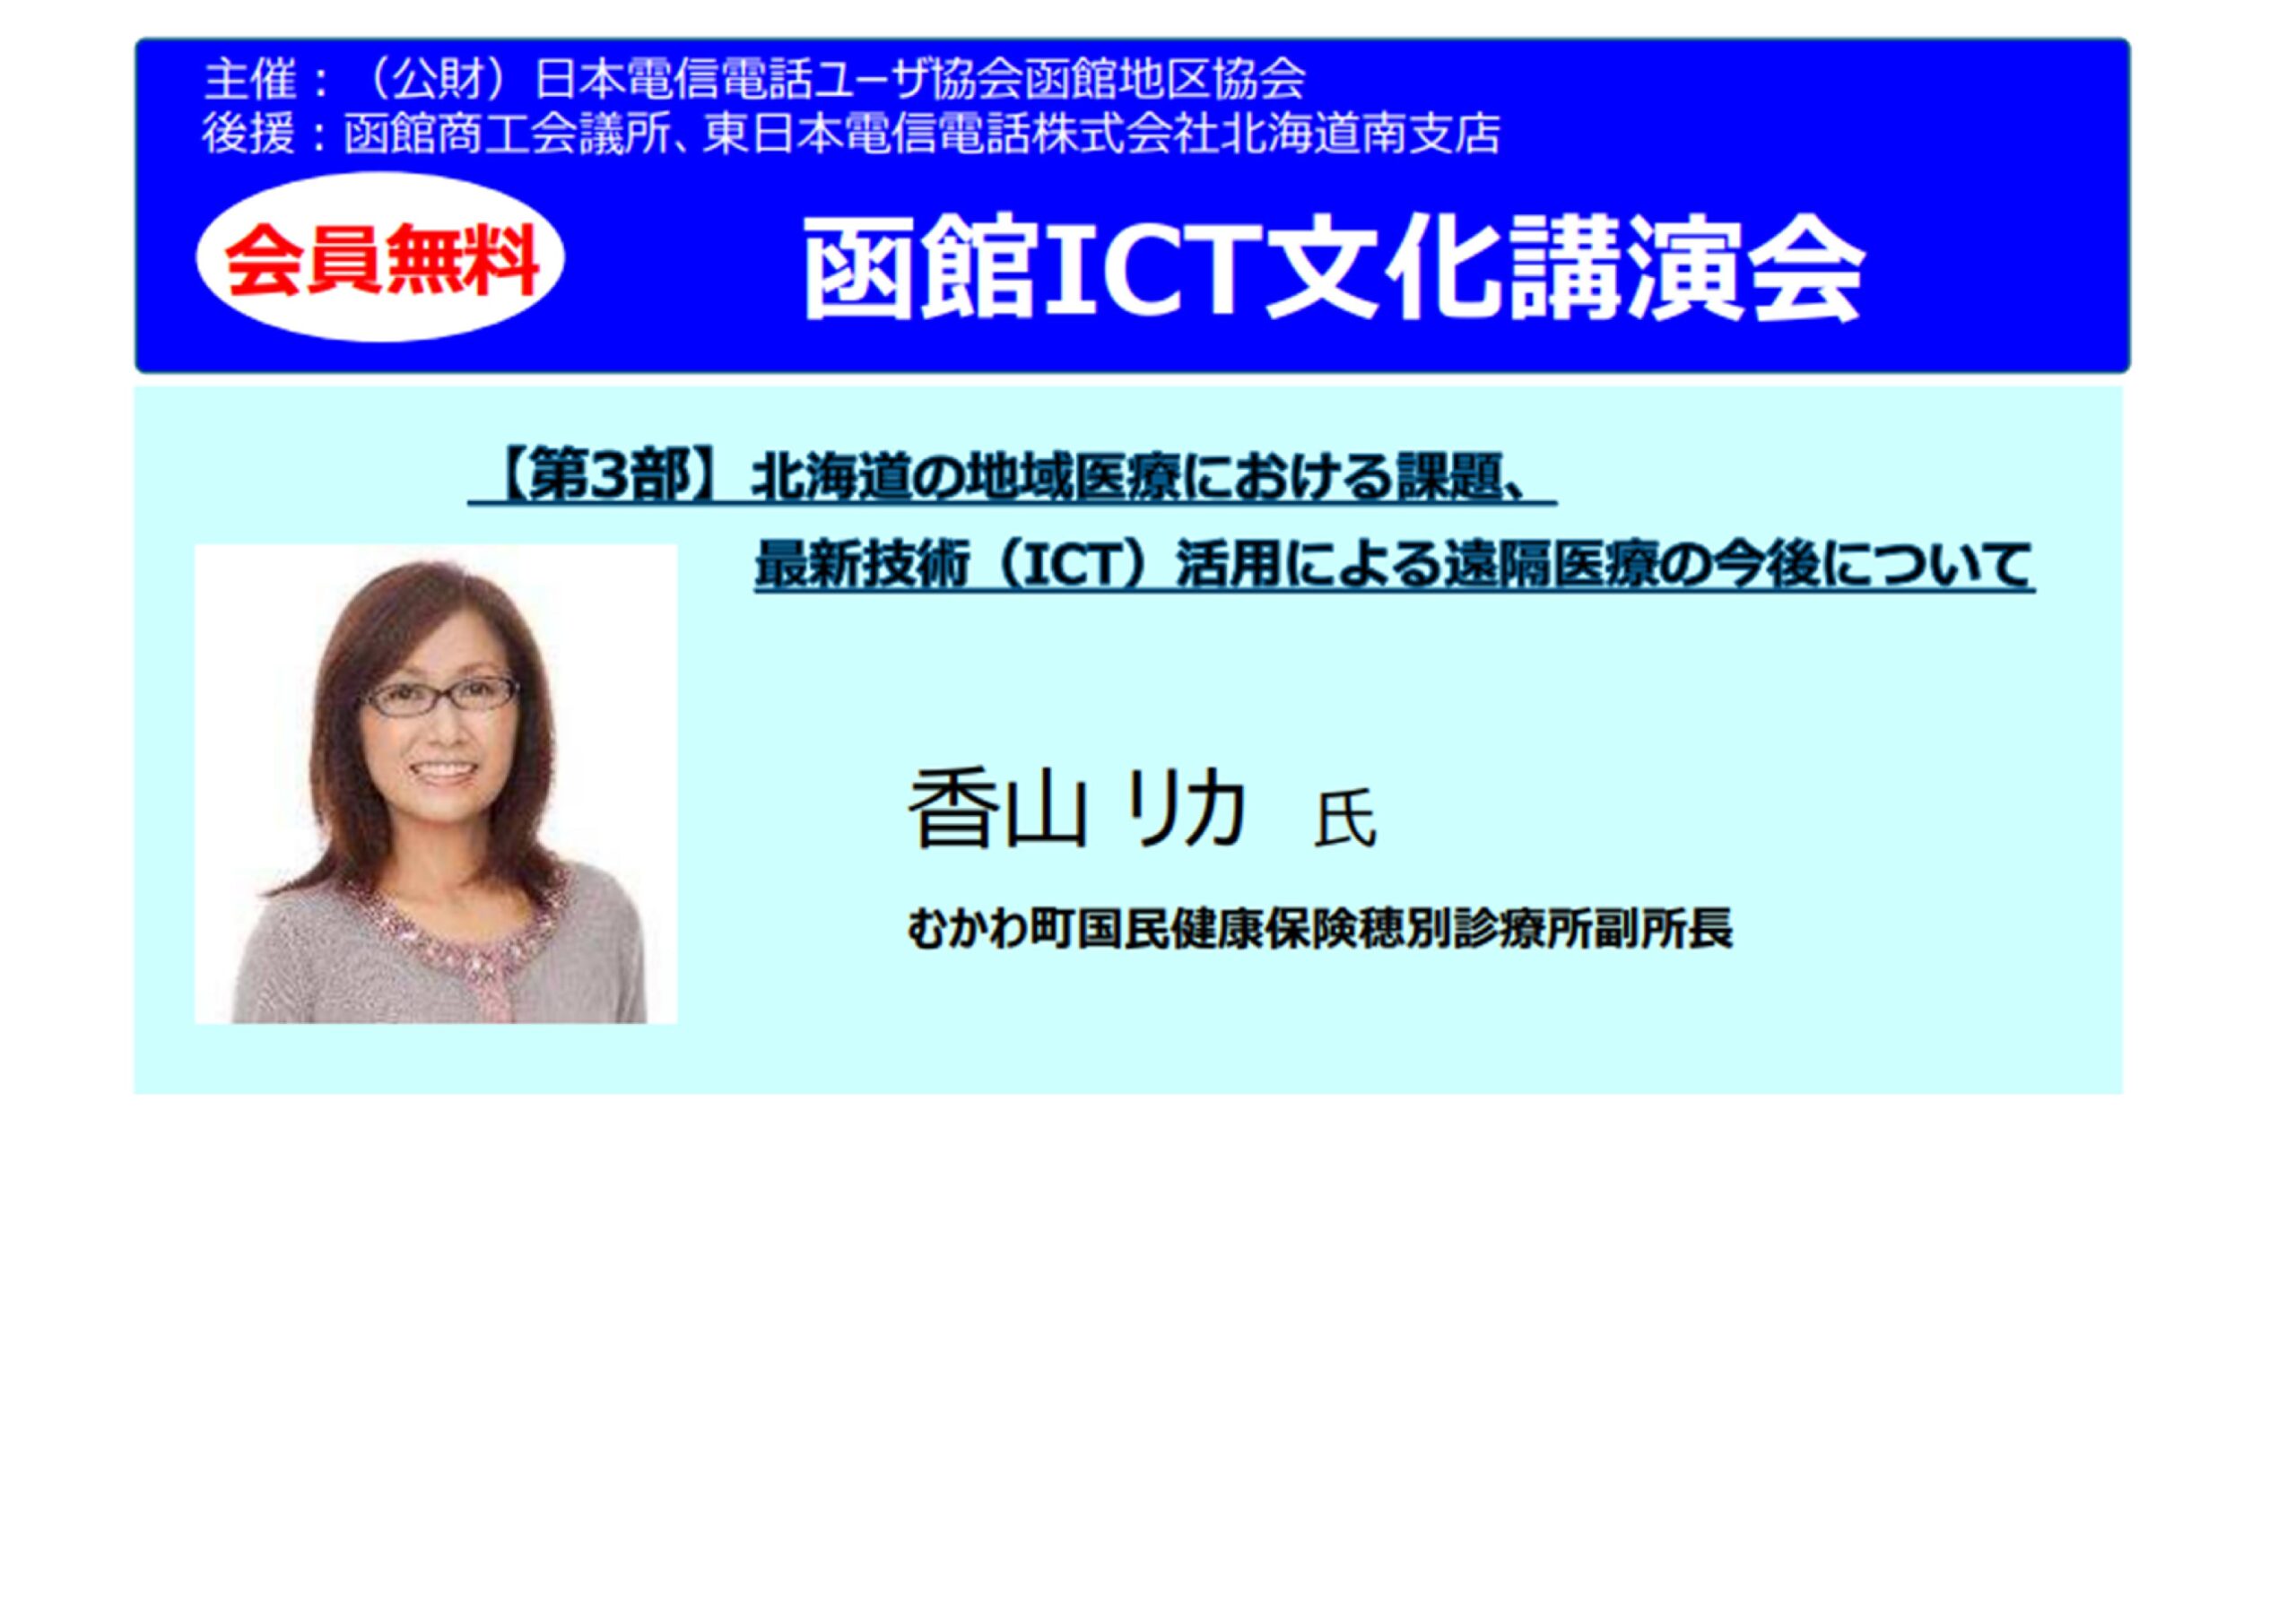 【函館】函館ICT文化講演会の開催について